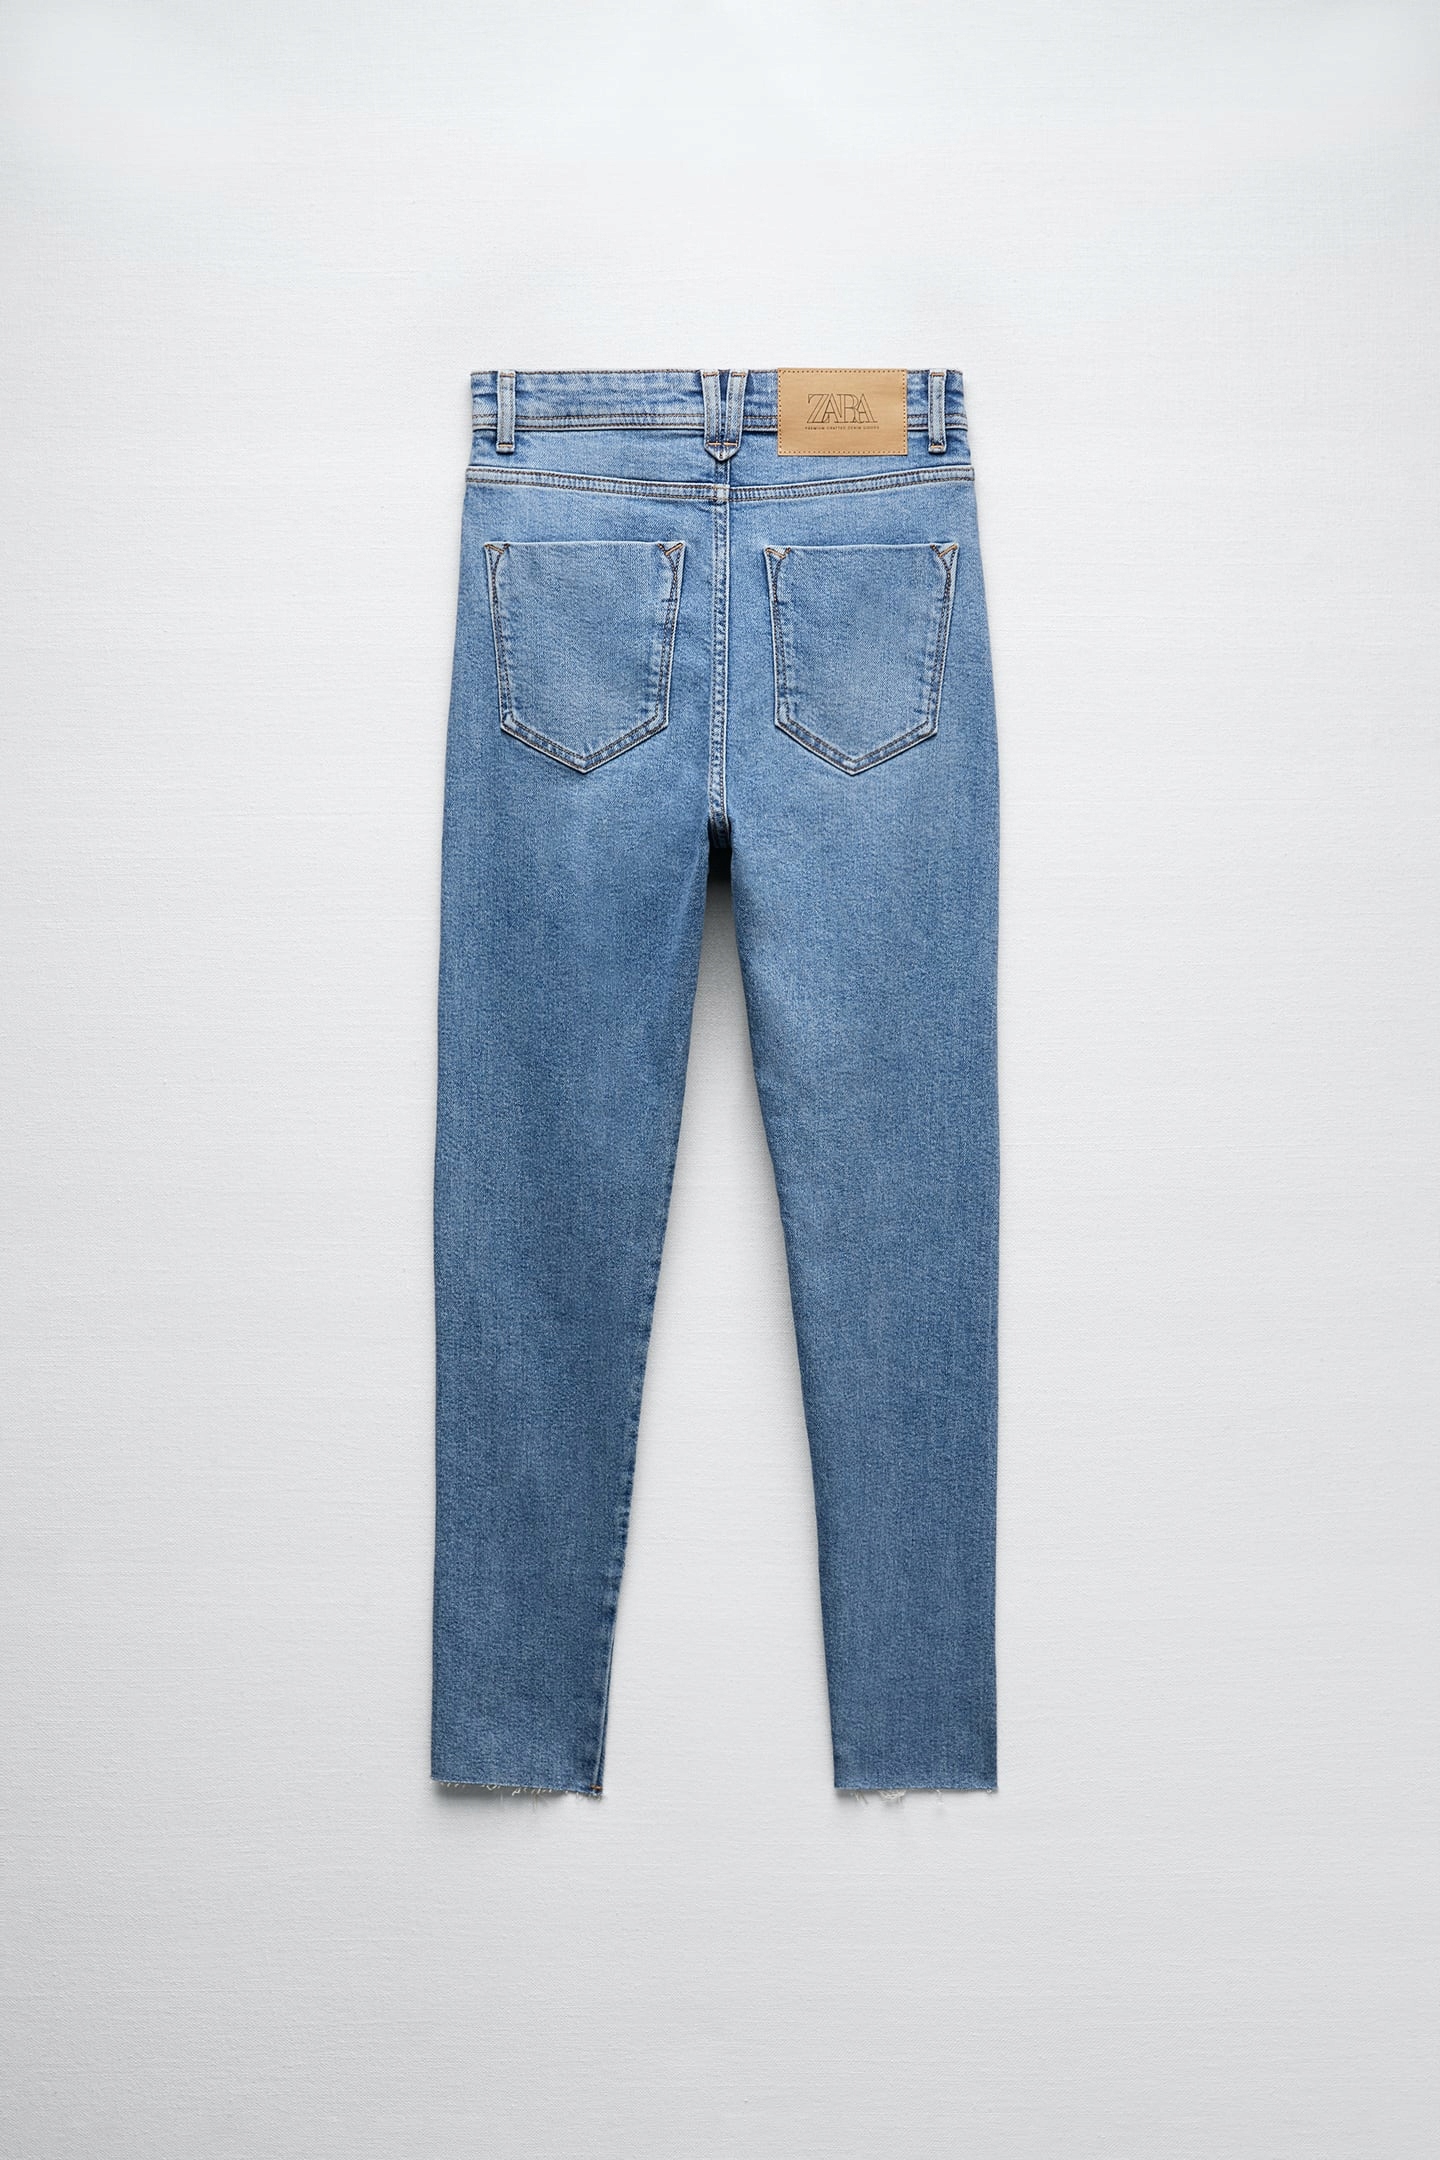 Zara Dopasowane jeansy niebieski Wygl\u0105d w stylu miejskim Moda Jeansy Dopasowane jeansy 